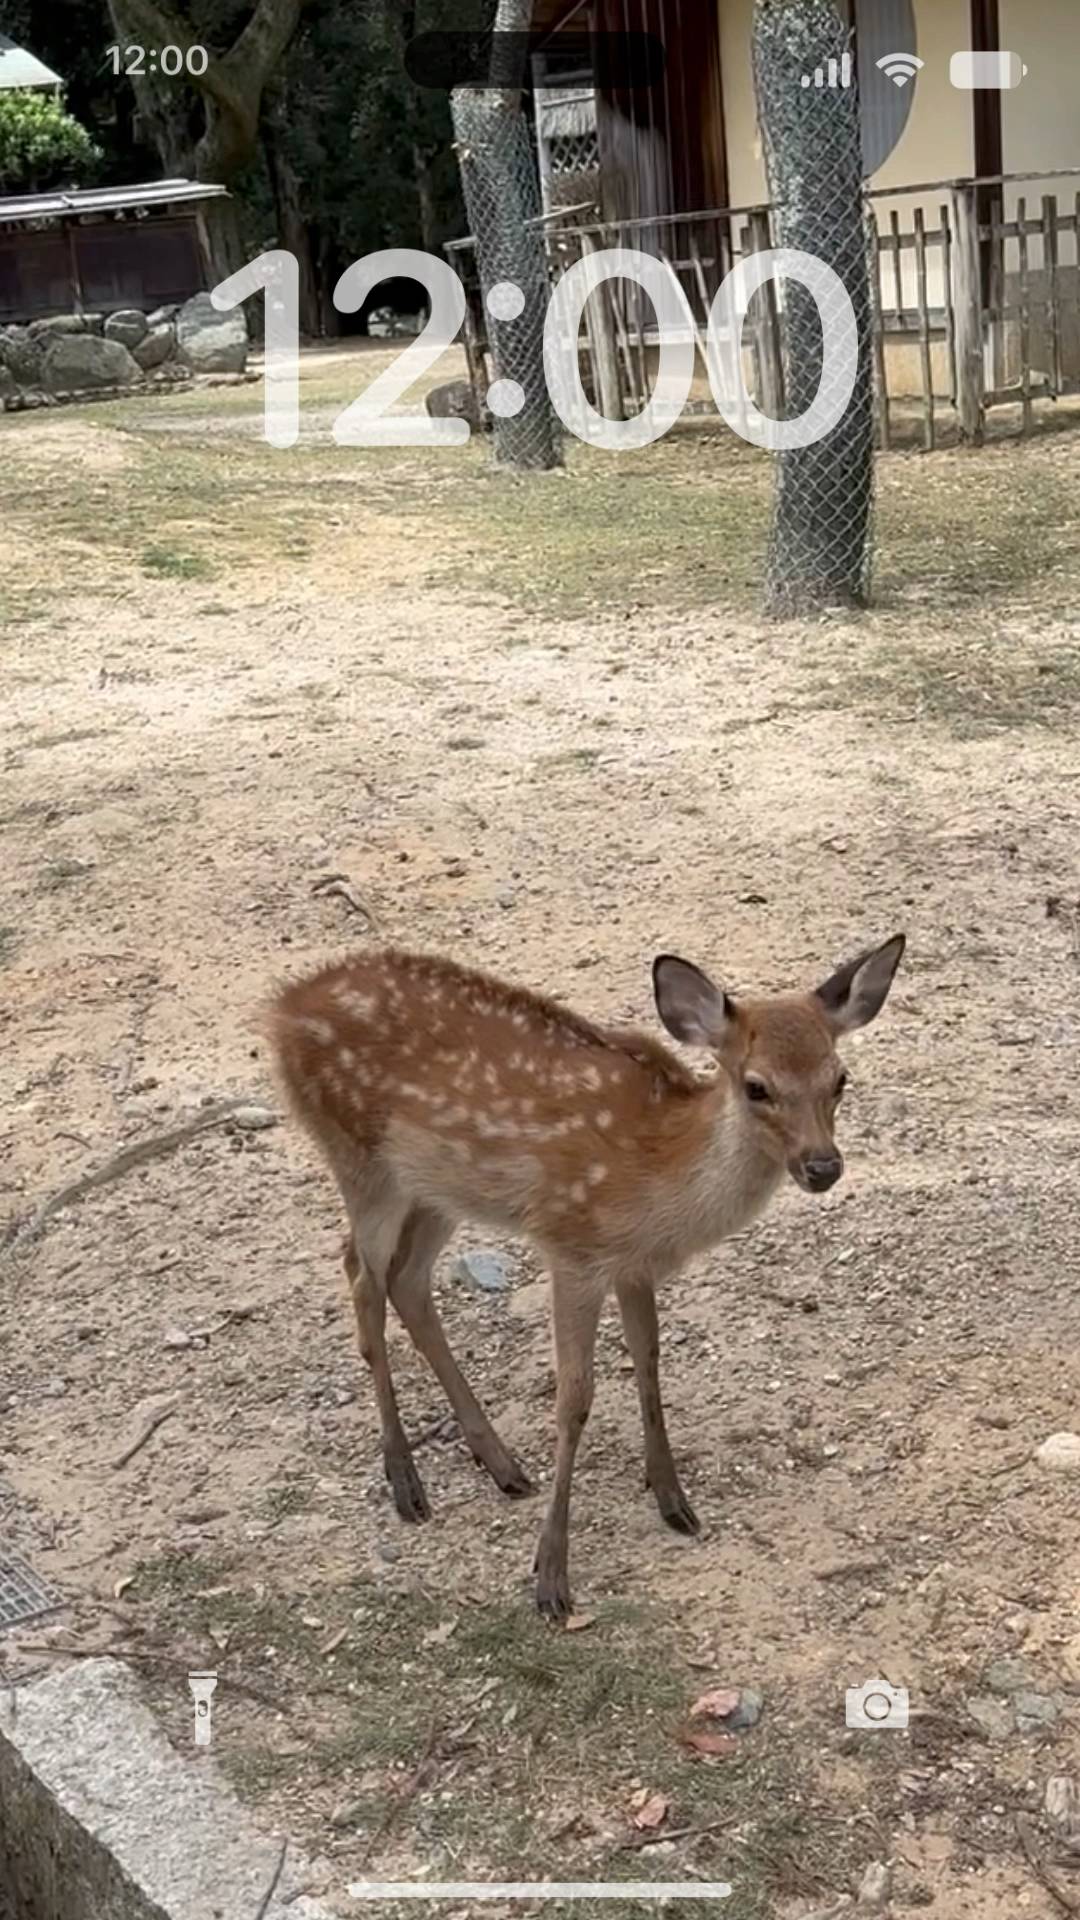 Nara cute deer 🦌🍁 Żywa tapeta[ltE2WDsbyYP7yruGvDEu]